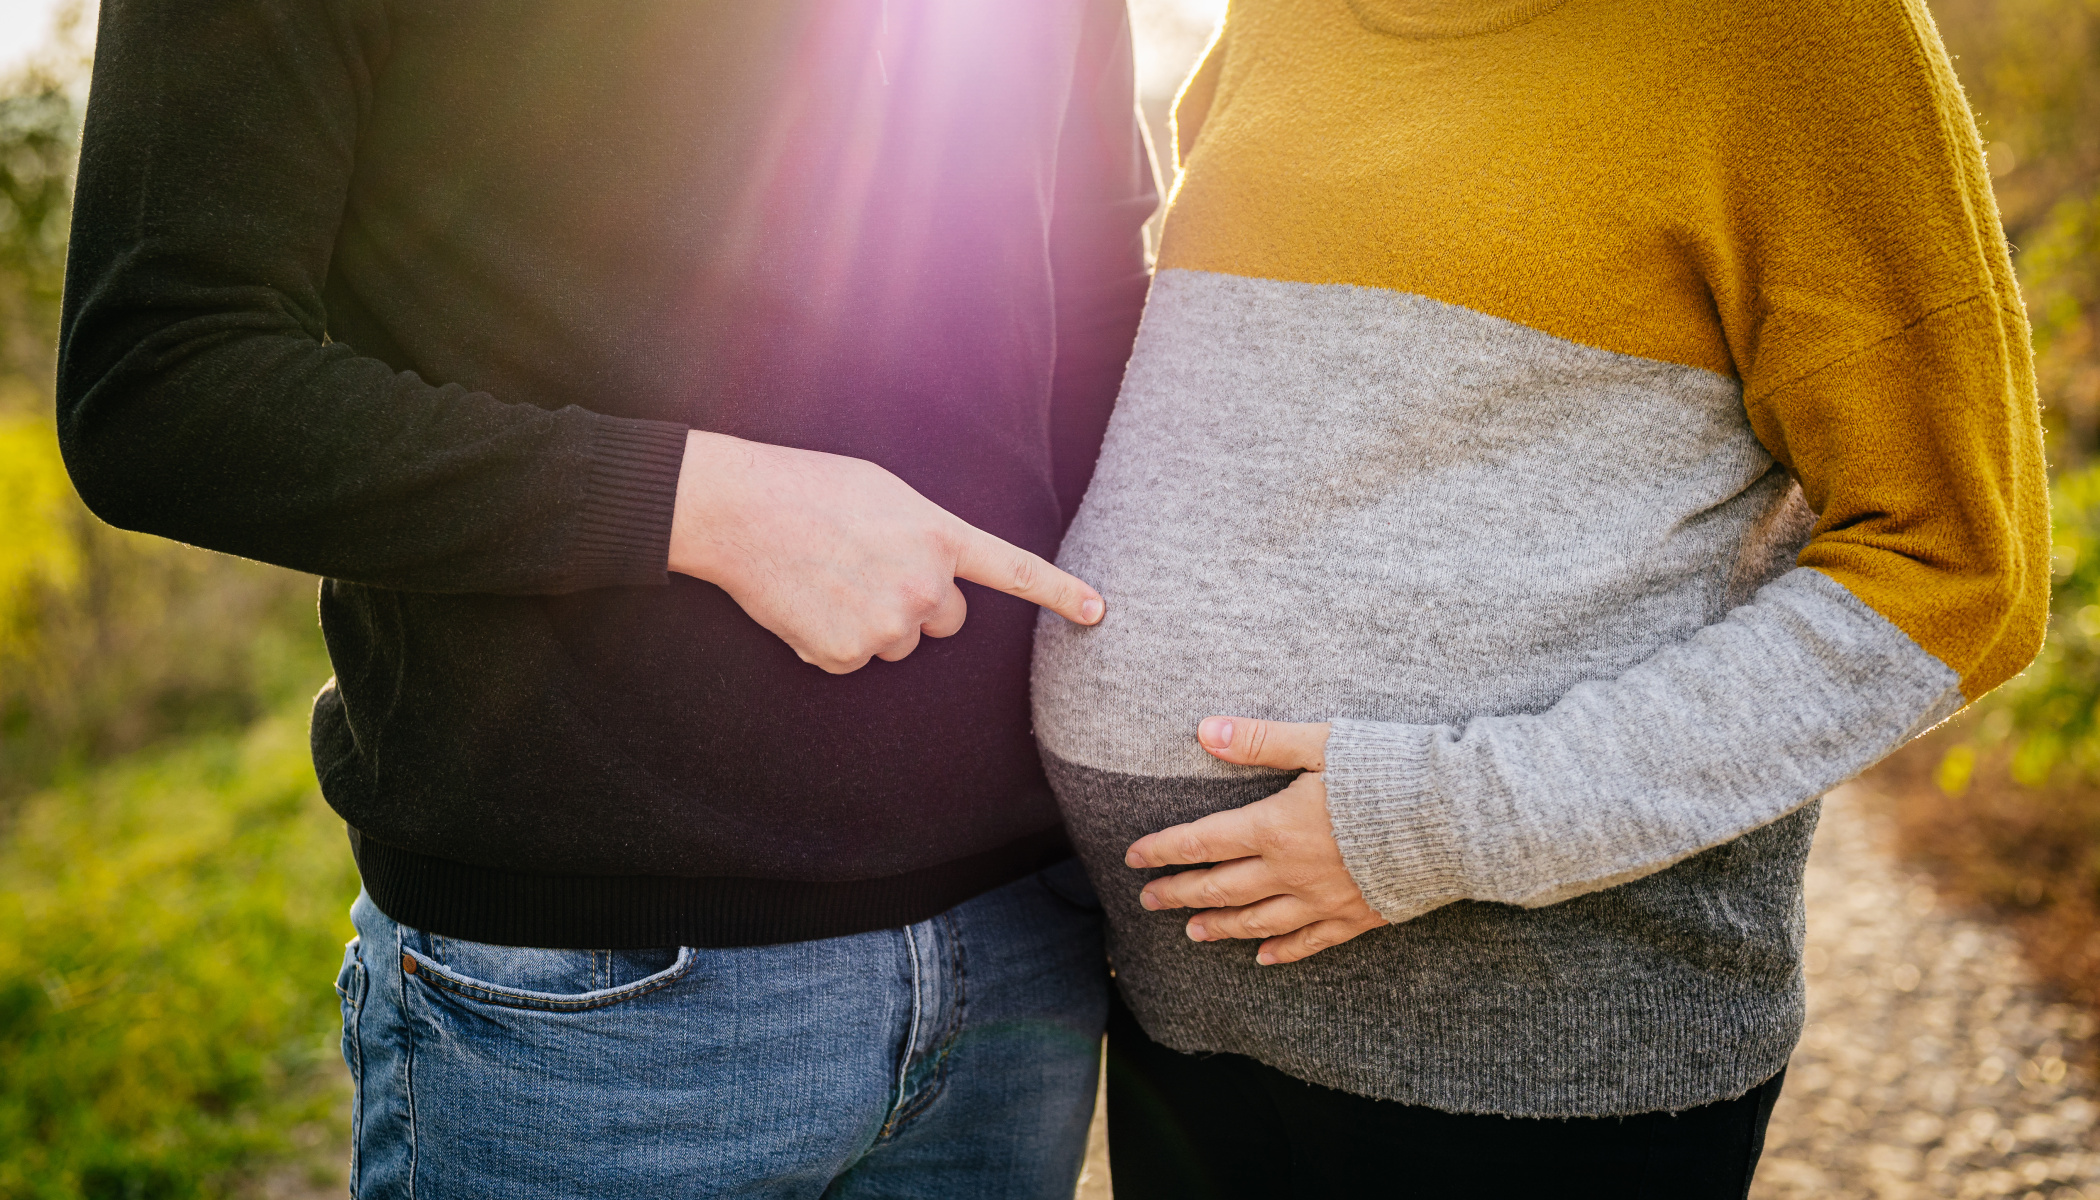 Schwangerschaftsfotografie - Planen Sie, beziehen Sie Ihre Familie mit ein und wählen Sie die richtigen Posen